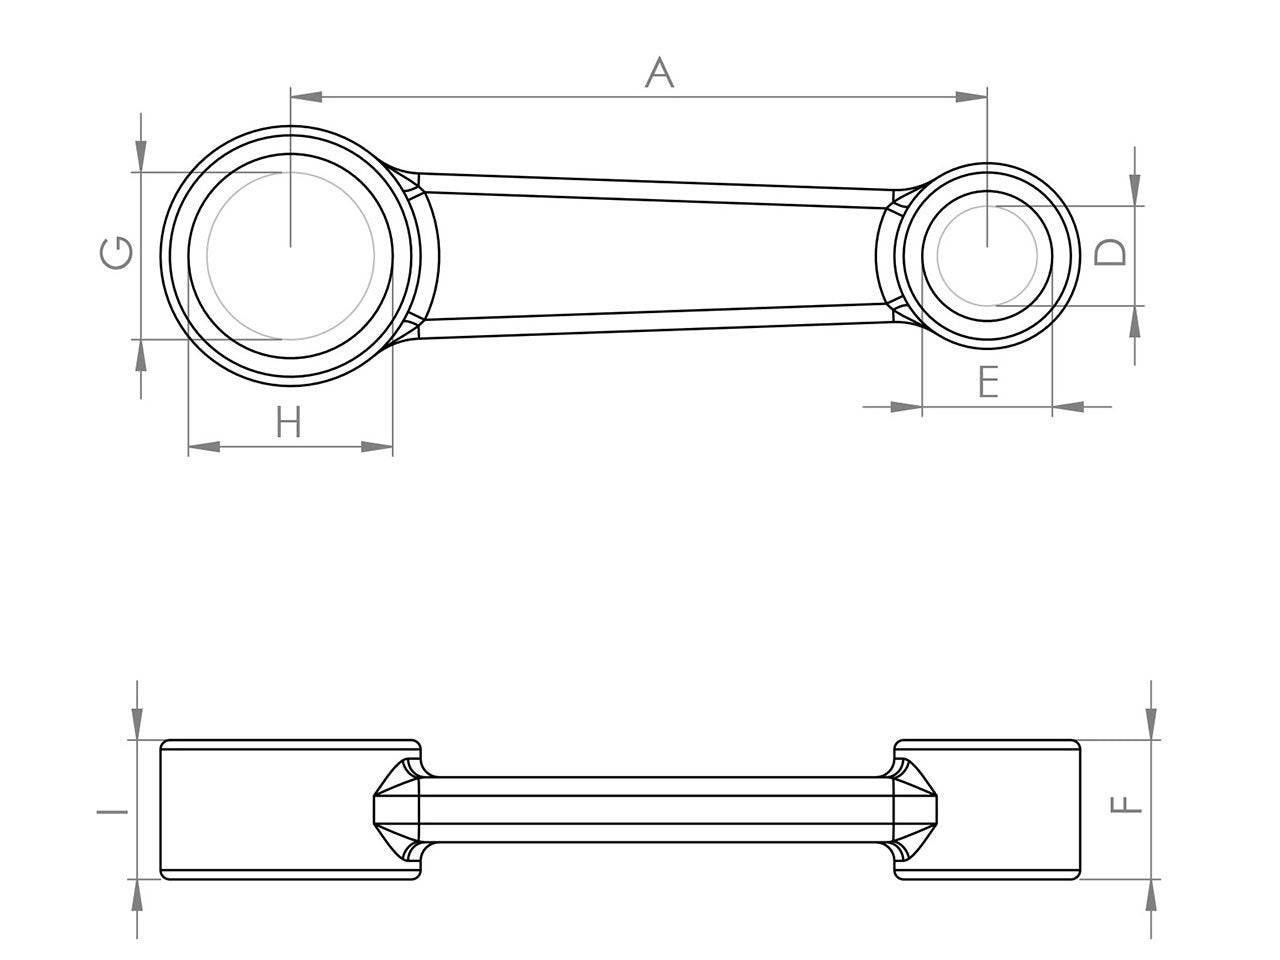 Zeichnung Barikit Pleuel für einen Cagiva Mito Motor mit Bemaßung.